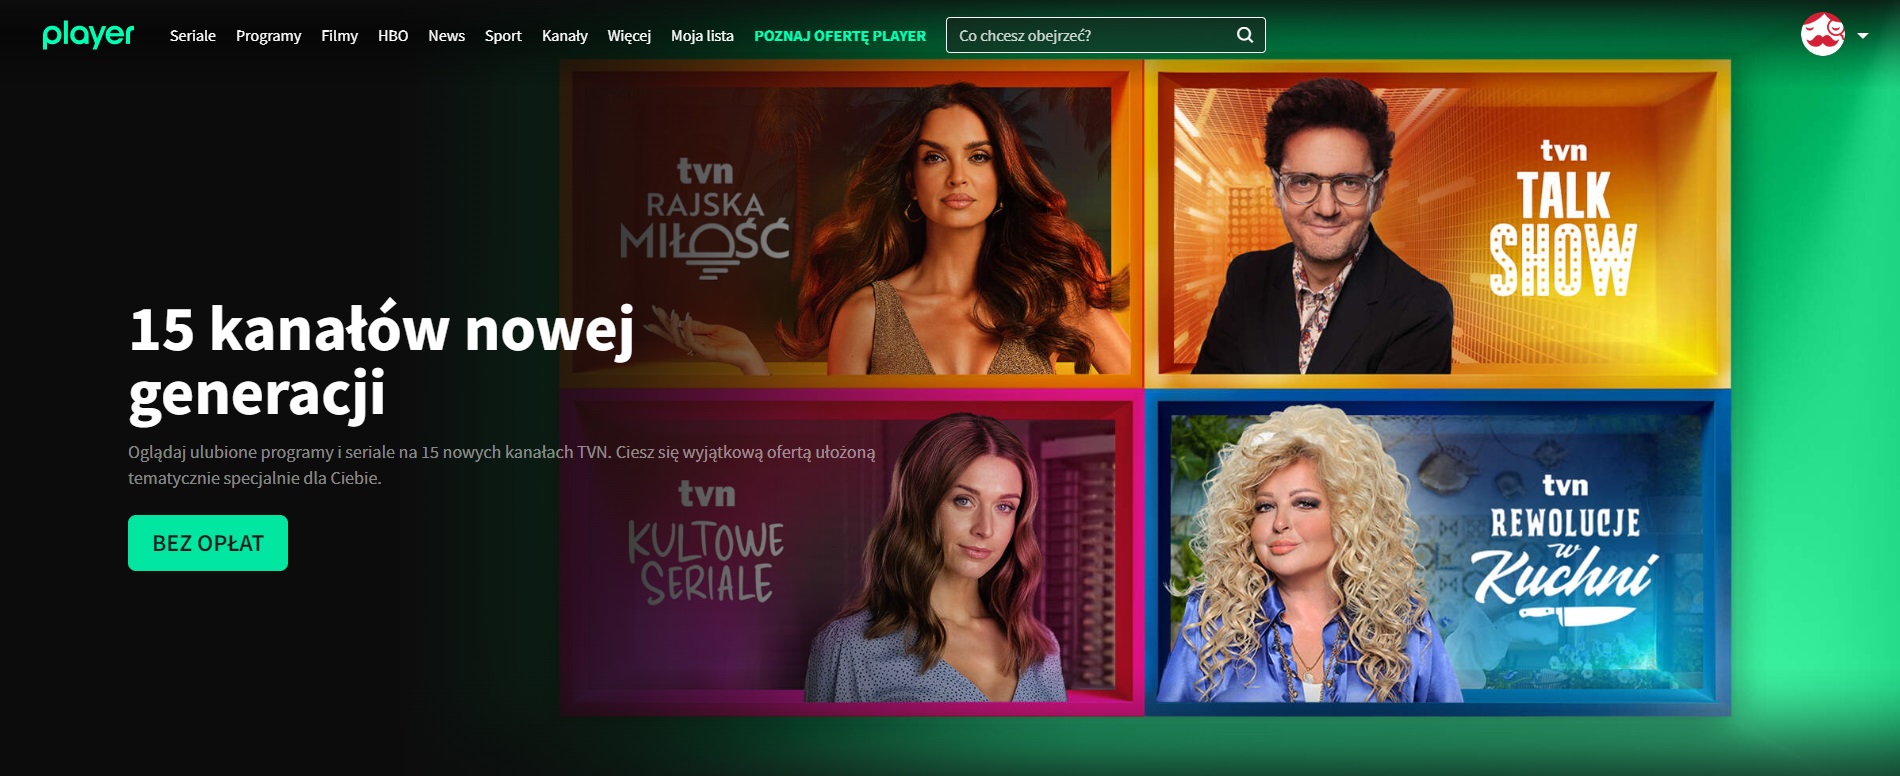 TVN Player 15 kanałów nowej generacji FAST fot. Tabletowo.pl